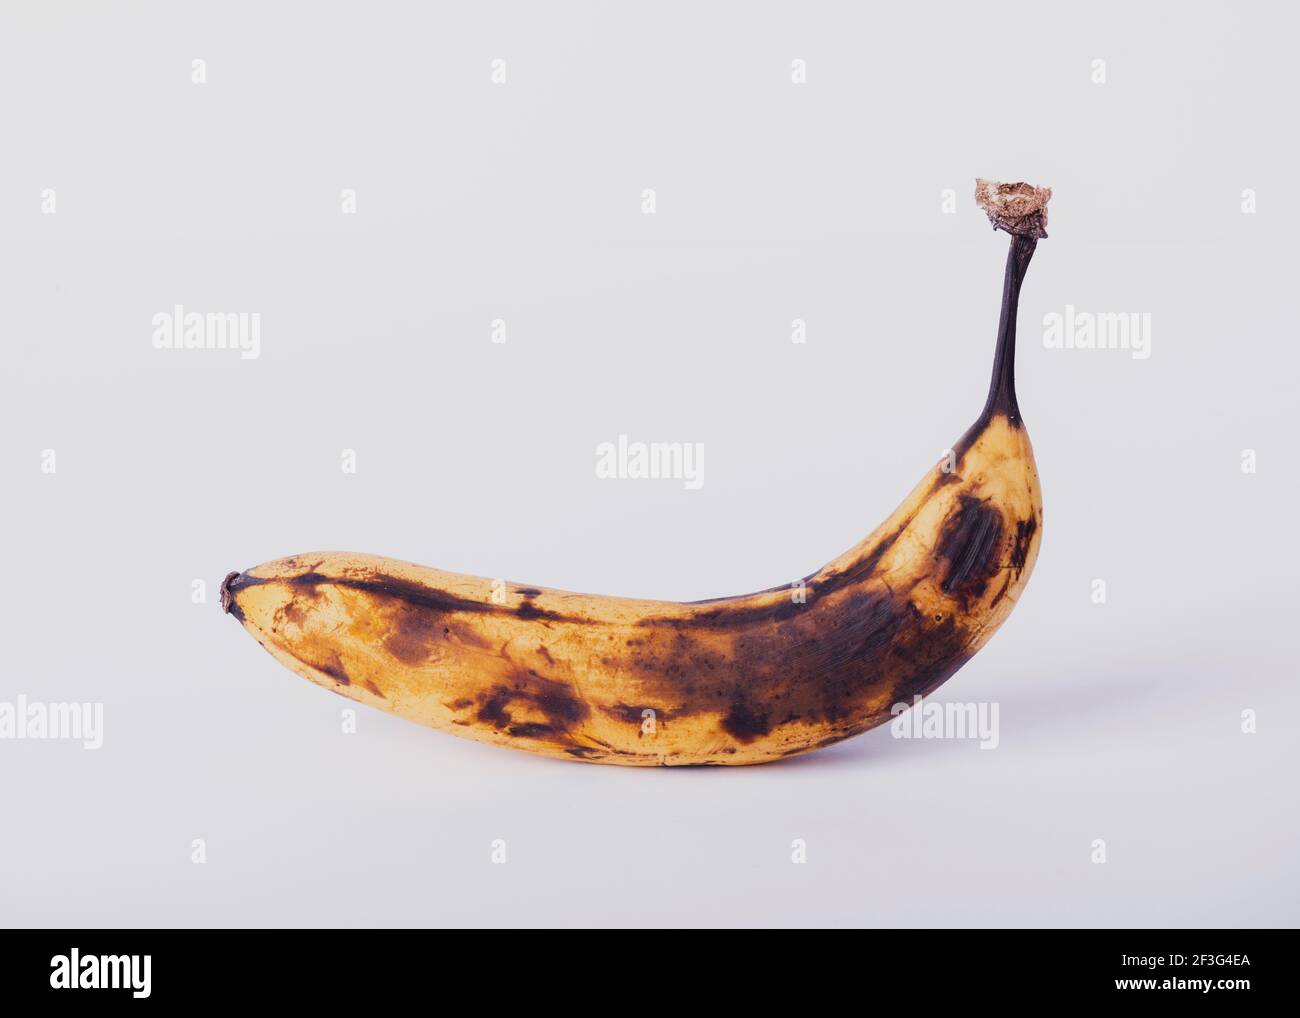 rotten banana Stock Photo